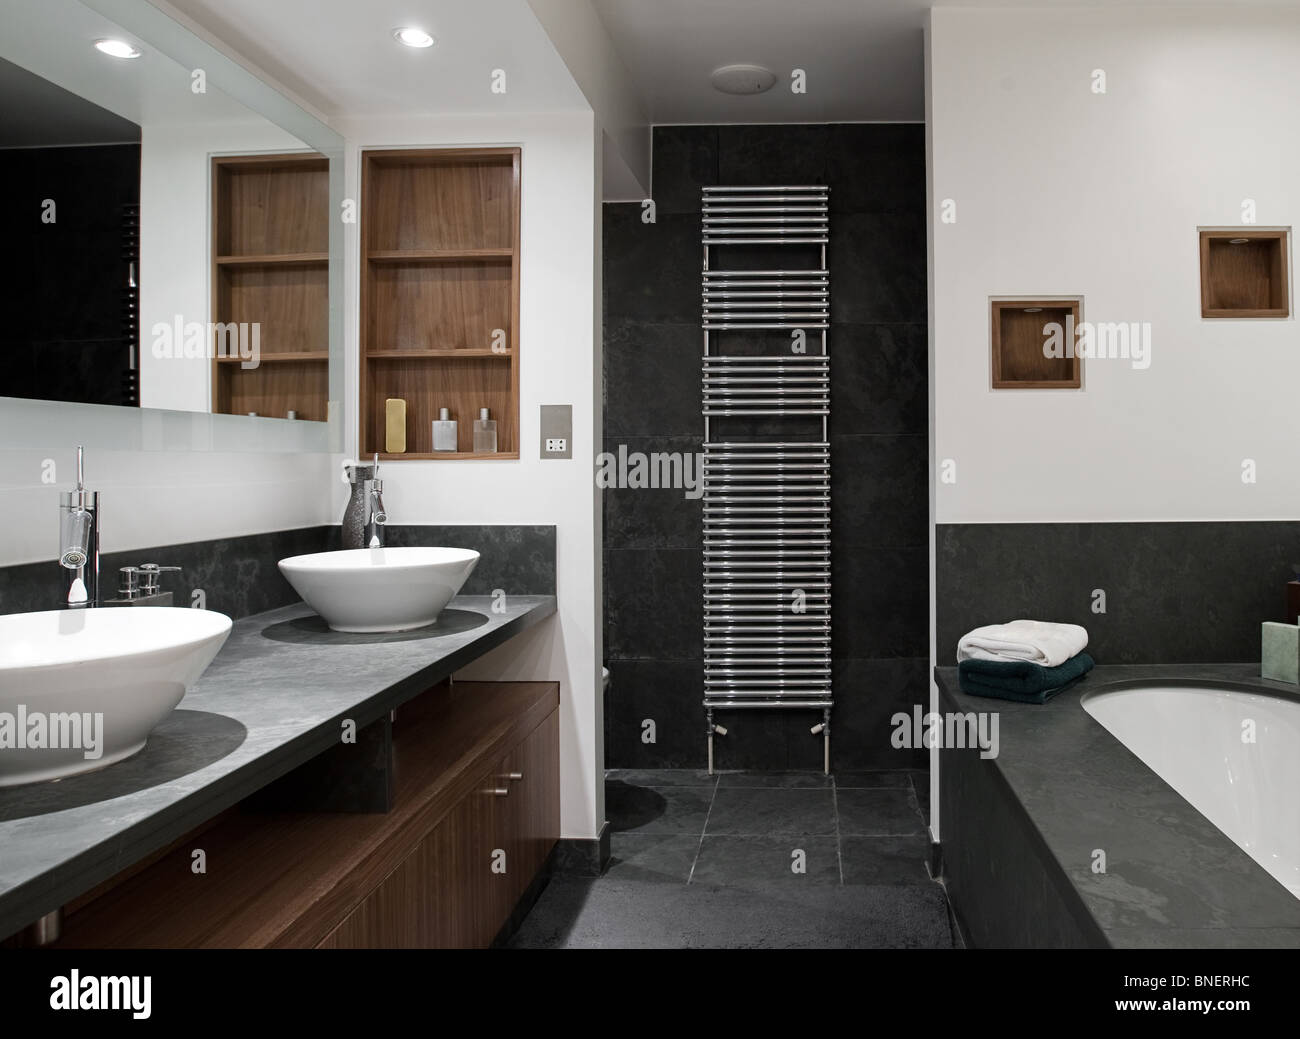 La foto de un interior lujoso baño con lavabos para él y para ella Foto de stock